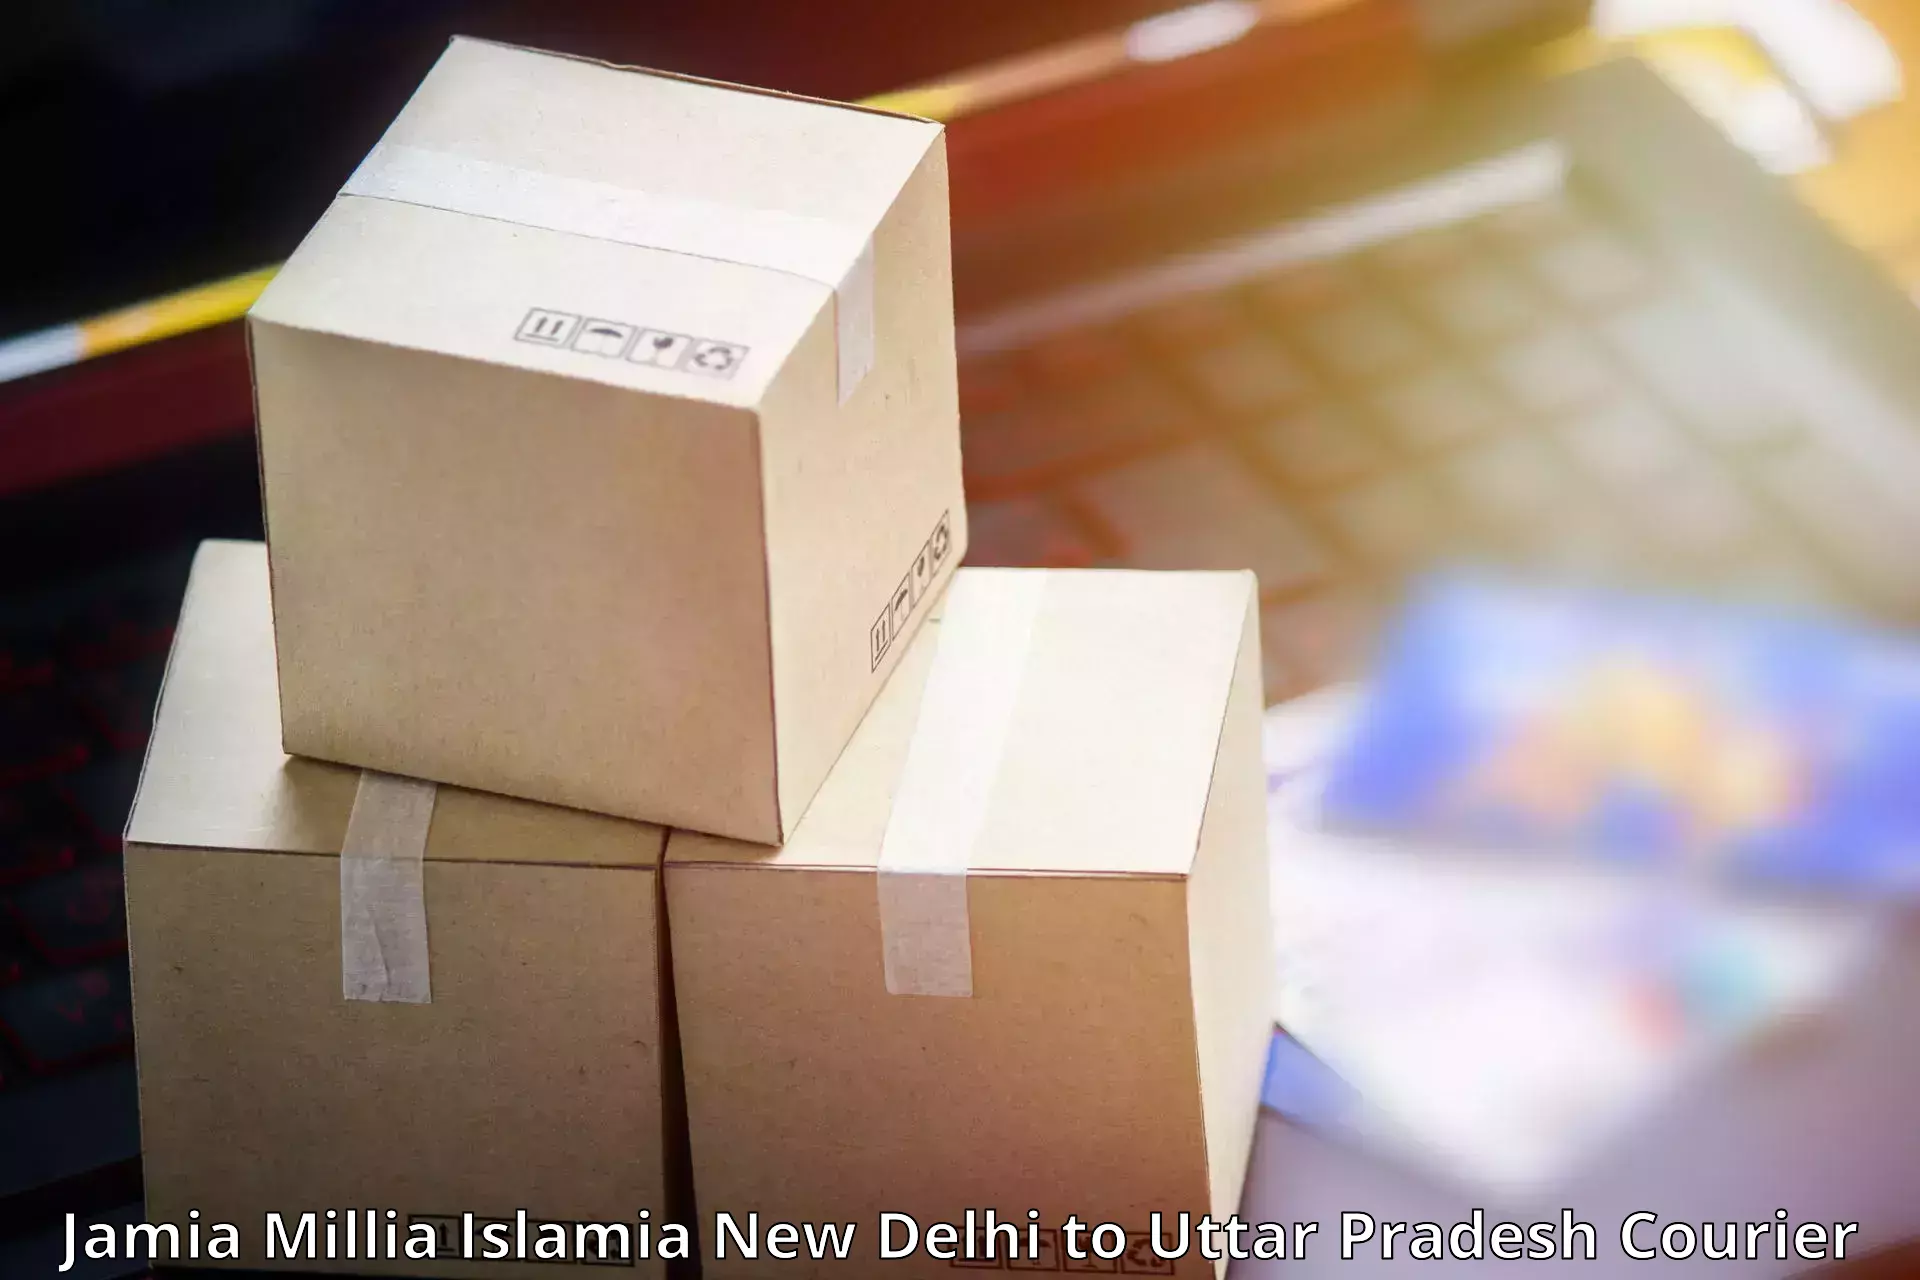 High-capacity parcel service Jamia Millia Islamia New Delhi to Budhana